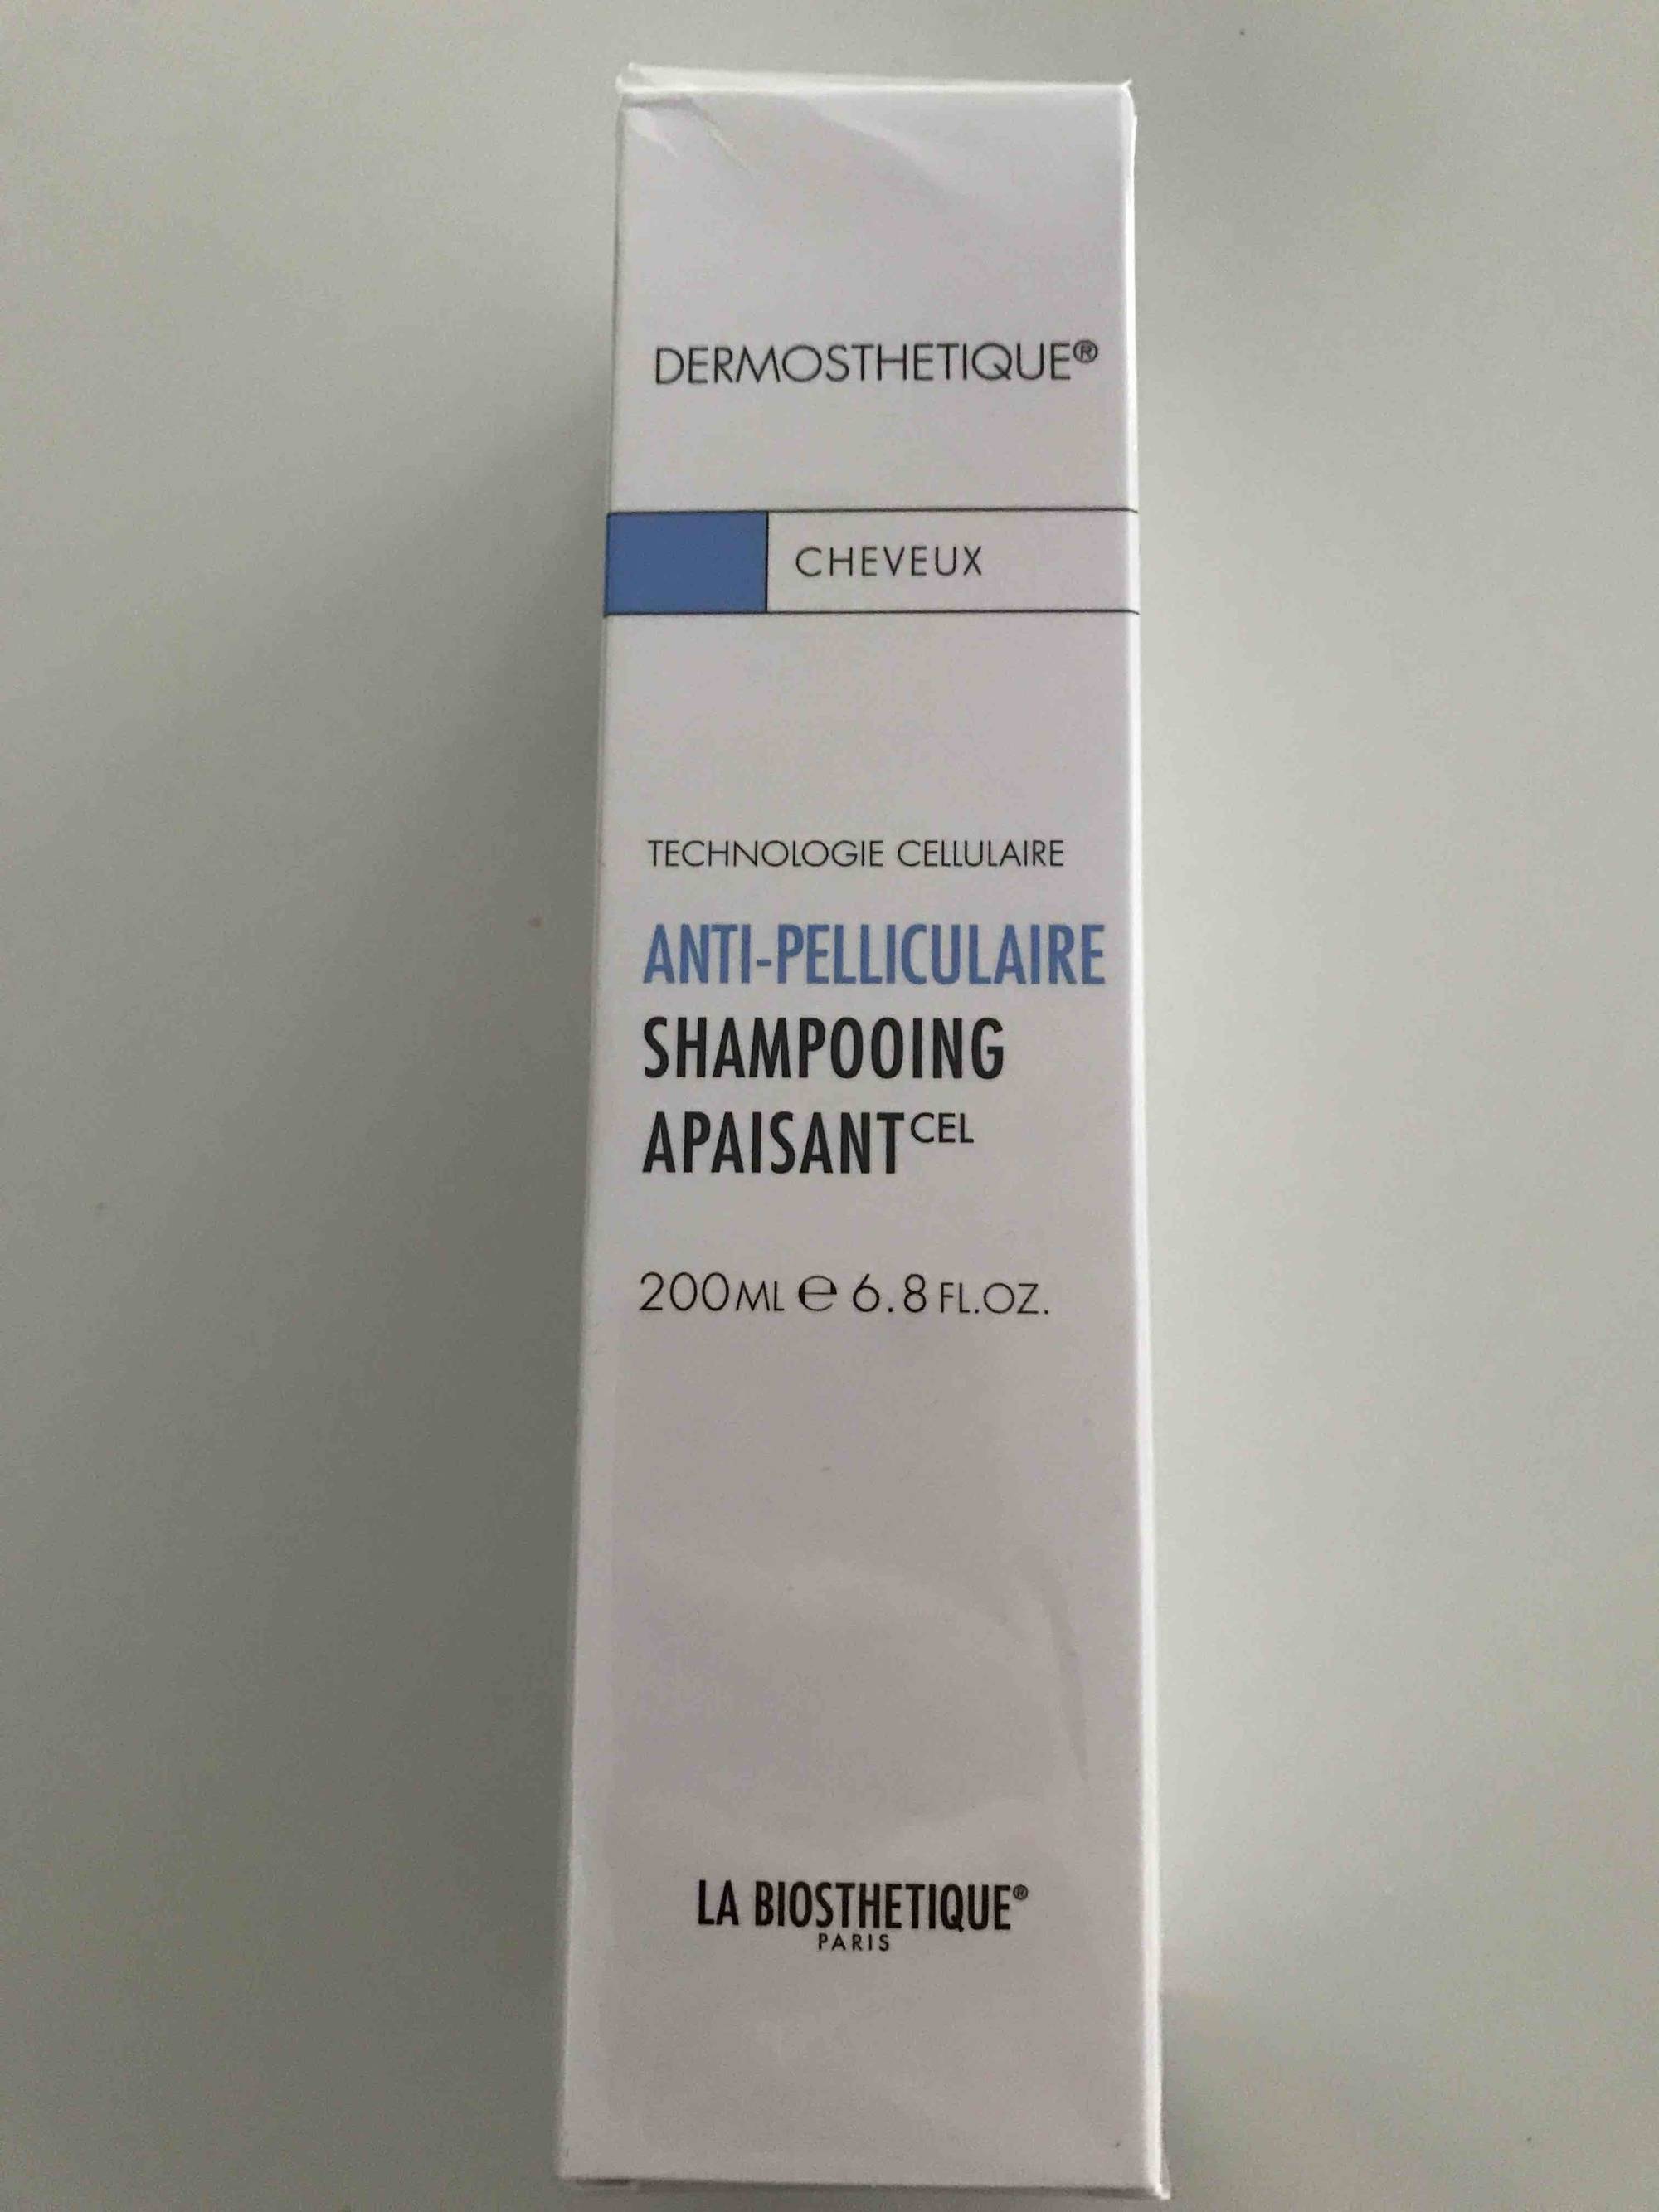 LA BIOSTHETIQUE PARIS - Dermosthetique anti-pelliculaire - Shampooing apaisant 